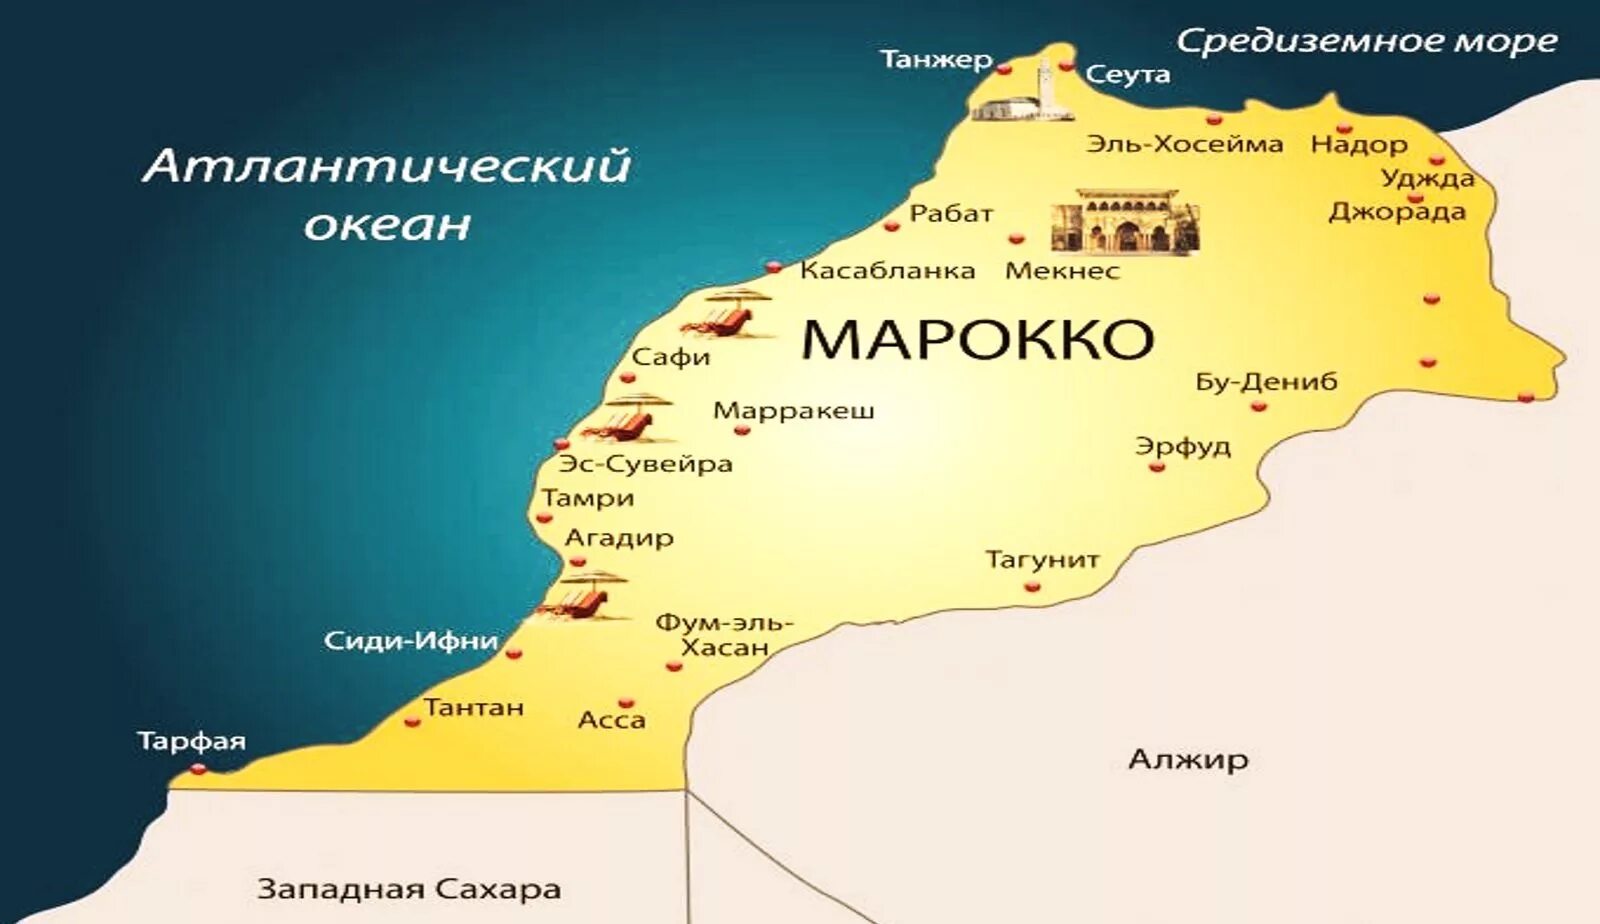 Марокко форма правления. Туристическая карта Марокко. Королевство Марокко на карте. Государство Марокко на карте. Марракеш на карте Марокко.